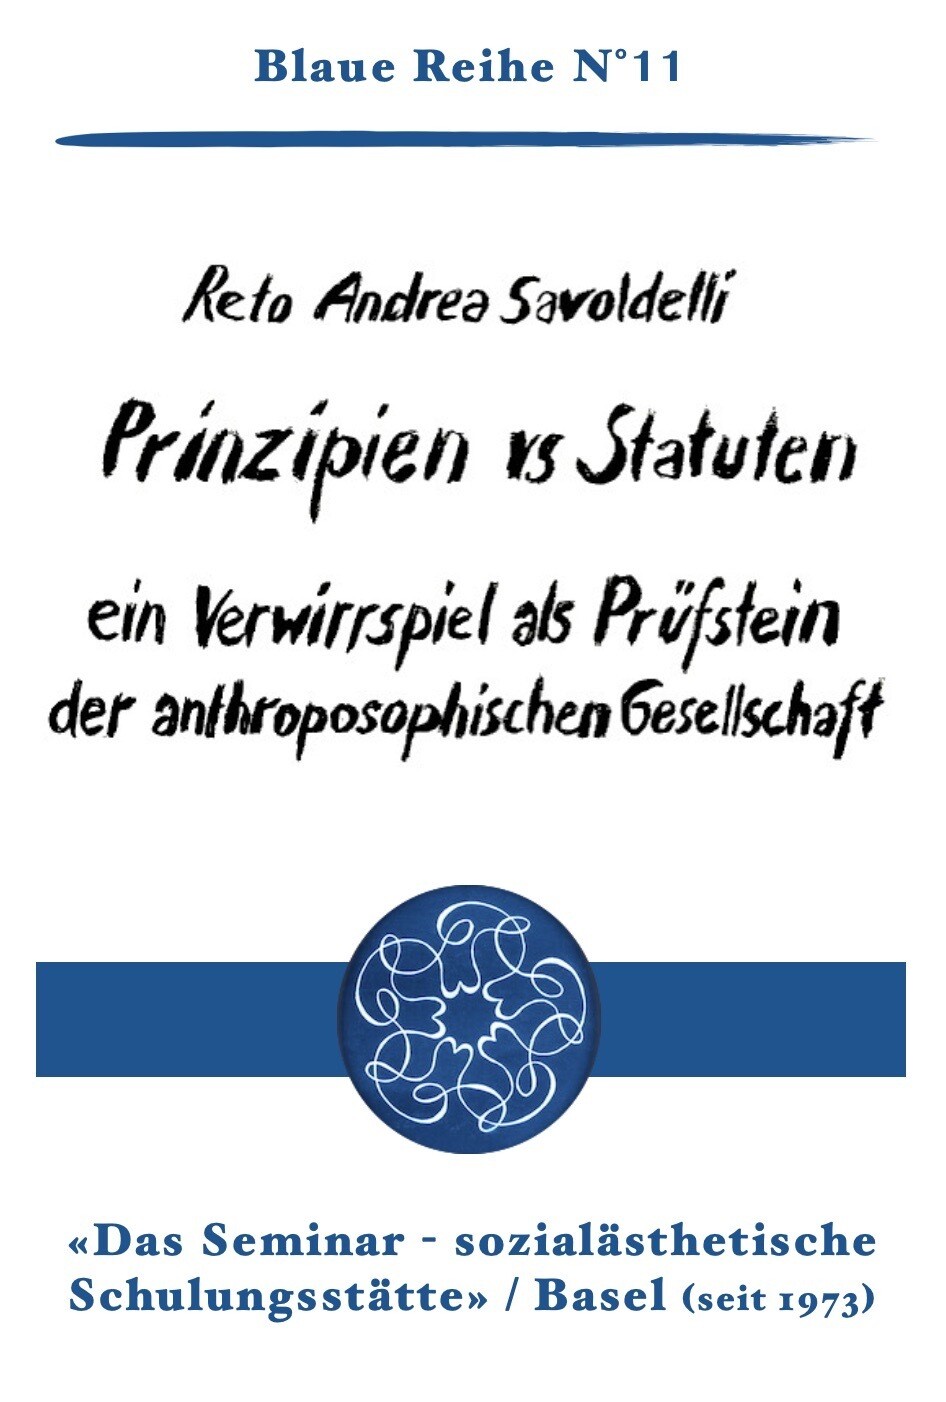 11|  R.A.Savoldelli: Prinzipien vs Statuten - Ein Verwirrspiel als Prüfstein der anthroposophischen Gesellschaft